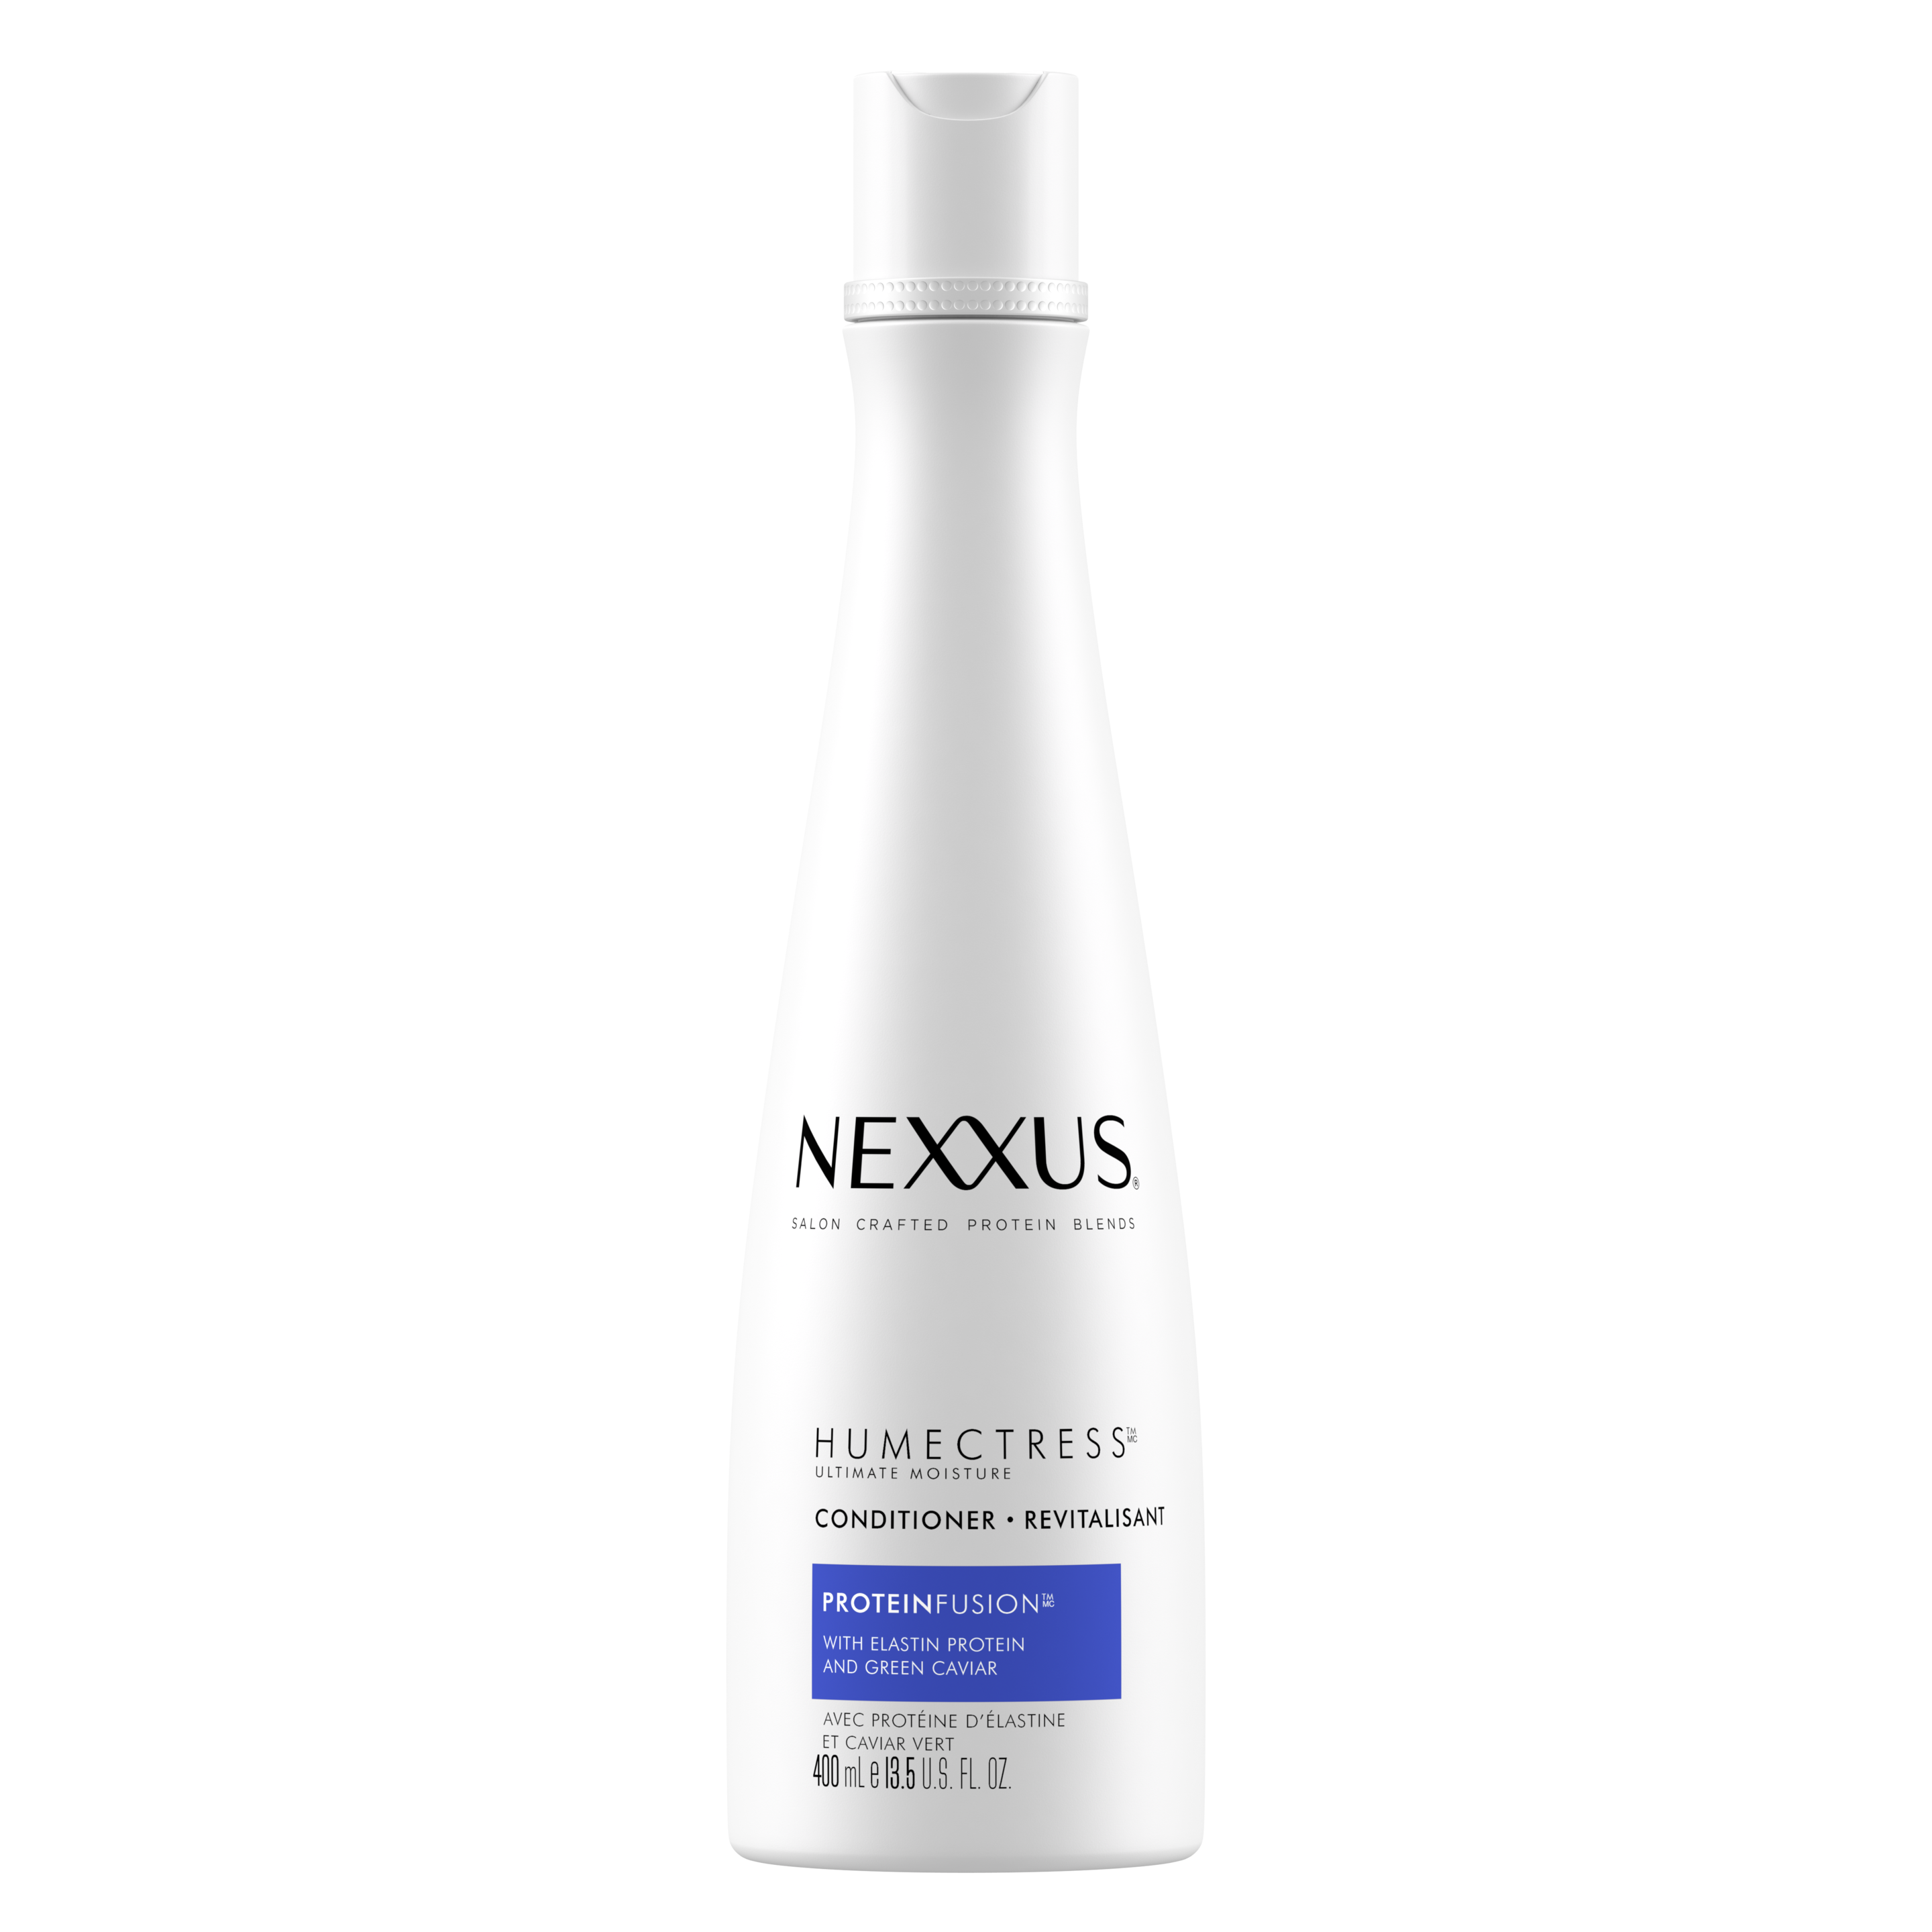 Face de l'emballage du revitalisant Humectress pour cheveux secs de Nexxus 400 ml